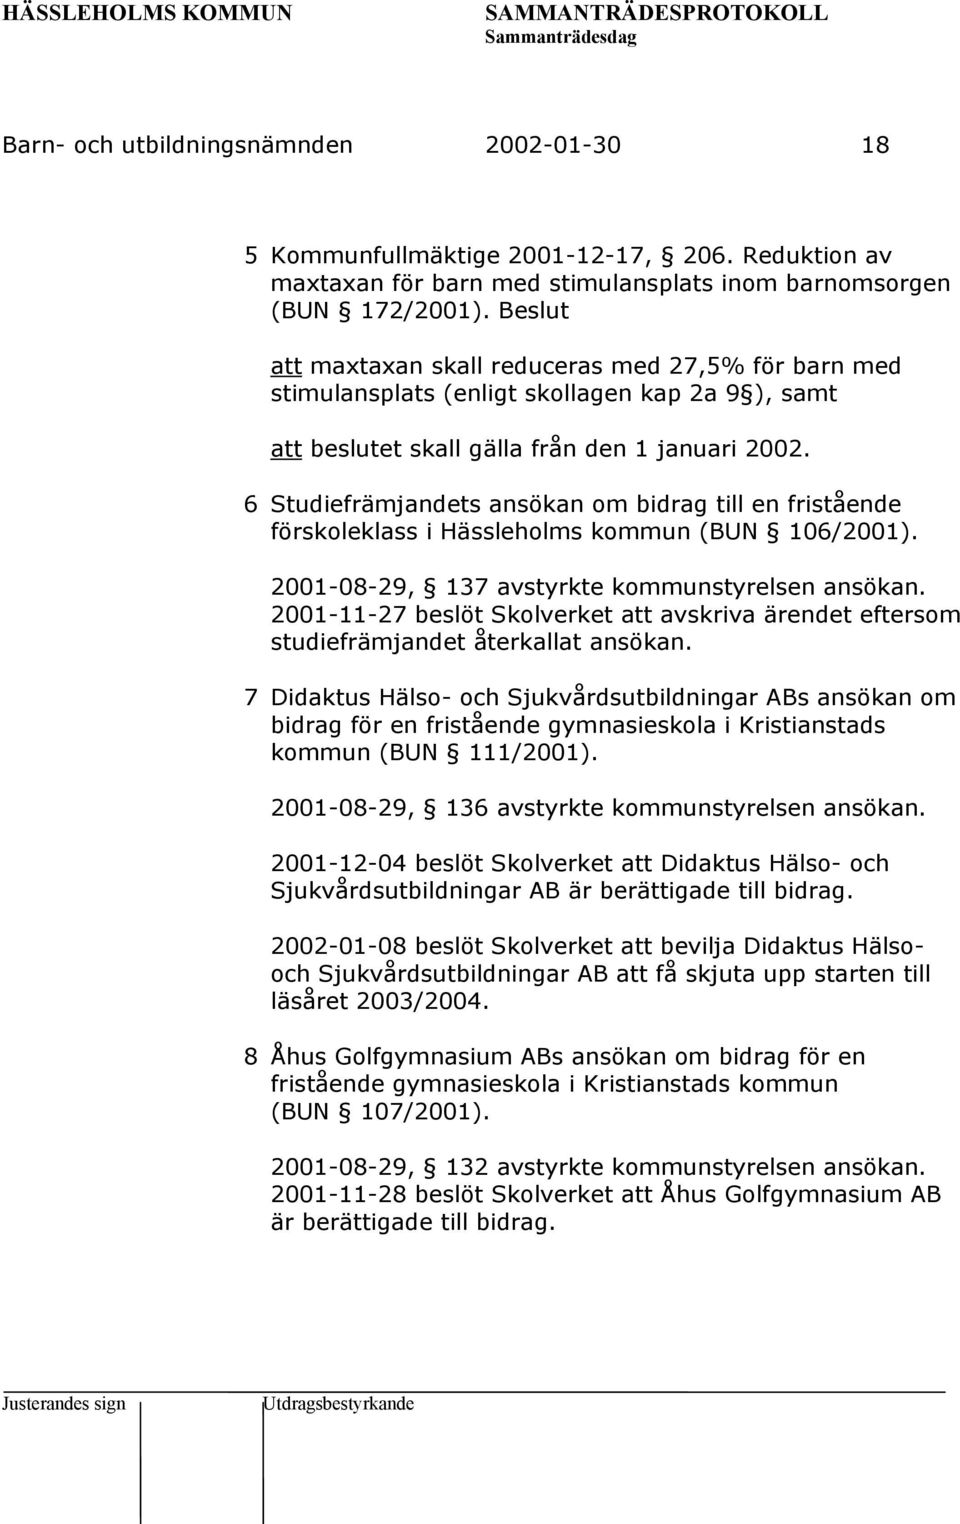 6 Studiefrämjandets ansökan om bidrag till en fristående förskoleklass i Hässleholms kommun (BUN 106/2001). 2001-08-29, 137 avstyrkte kommunstyrelsen ansökan.